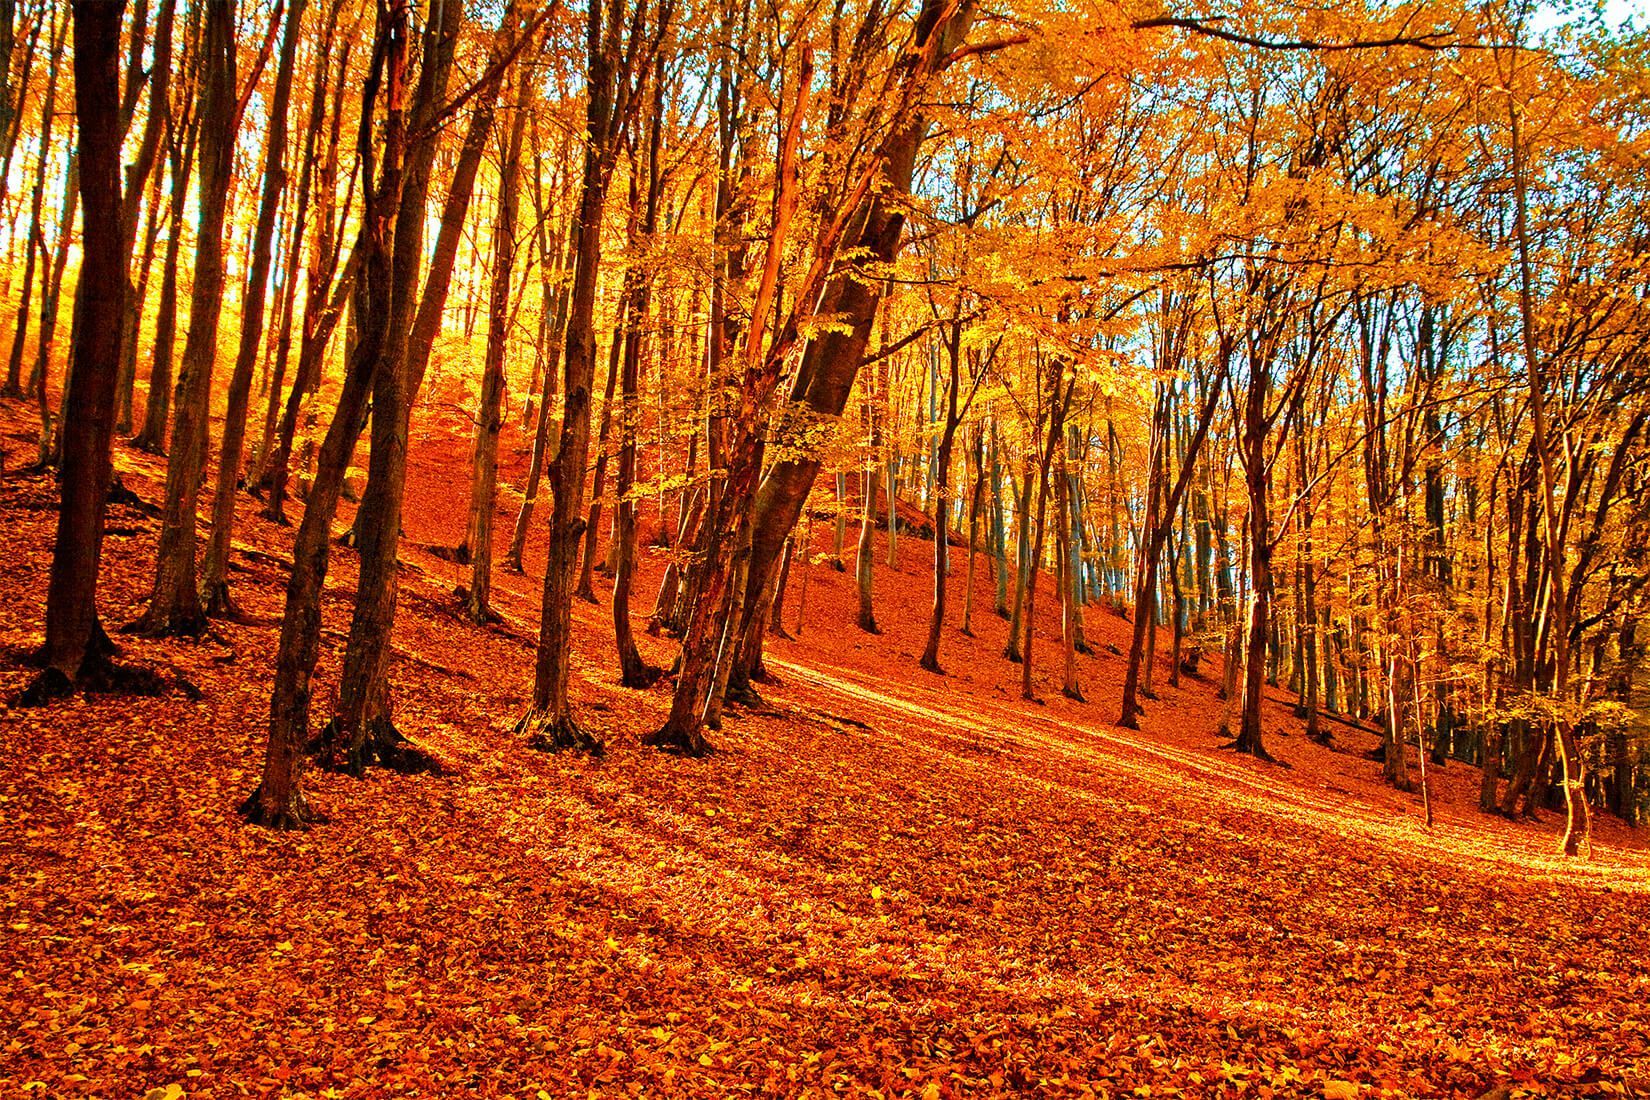 Autumn Forest Wallpaper Mural. Murals Wallpaper. Forest wallpaper, Autumn forest, Desktop wallpaper fall